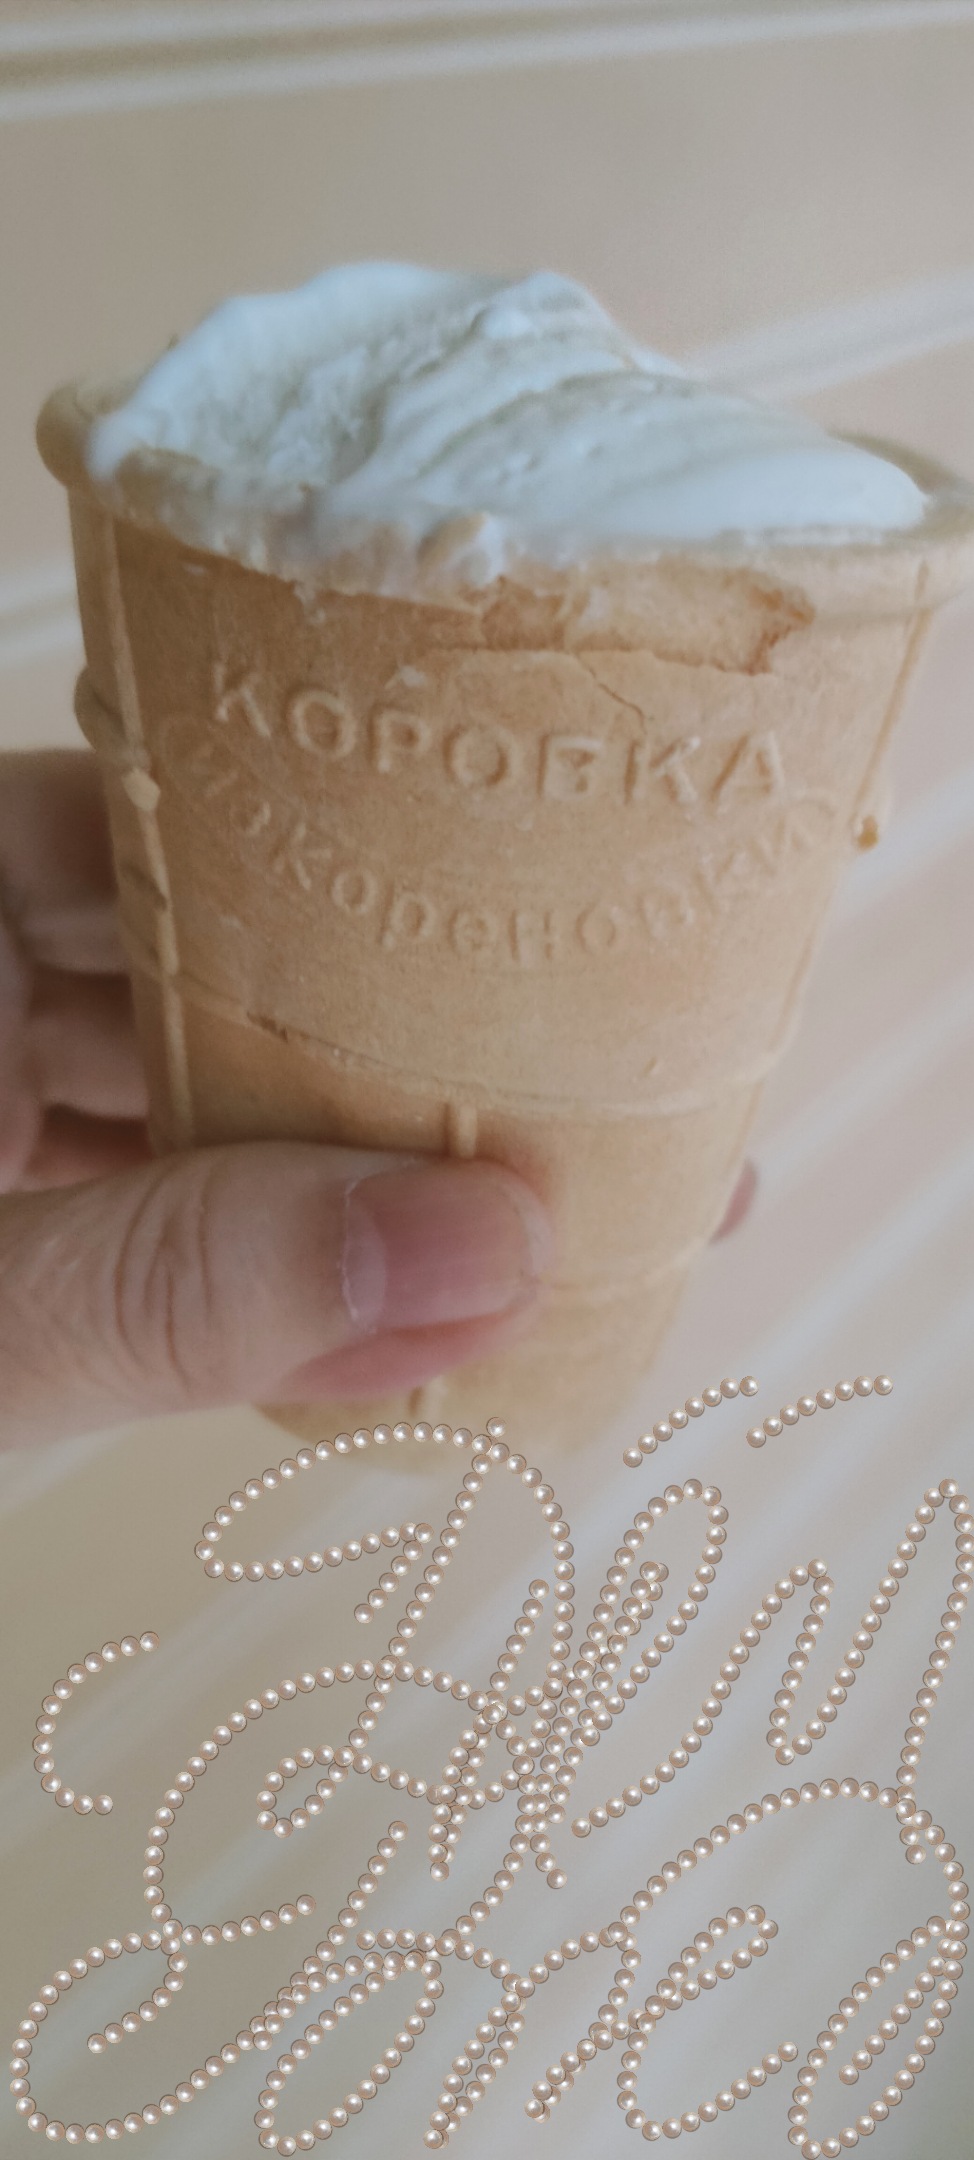 Надписи к мороженому на День Рождения ))